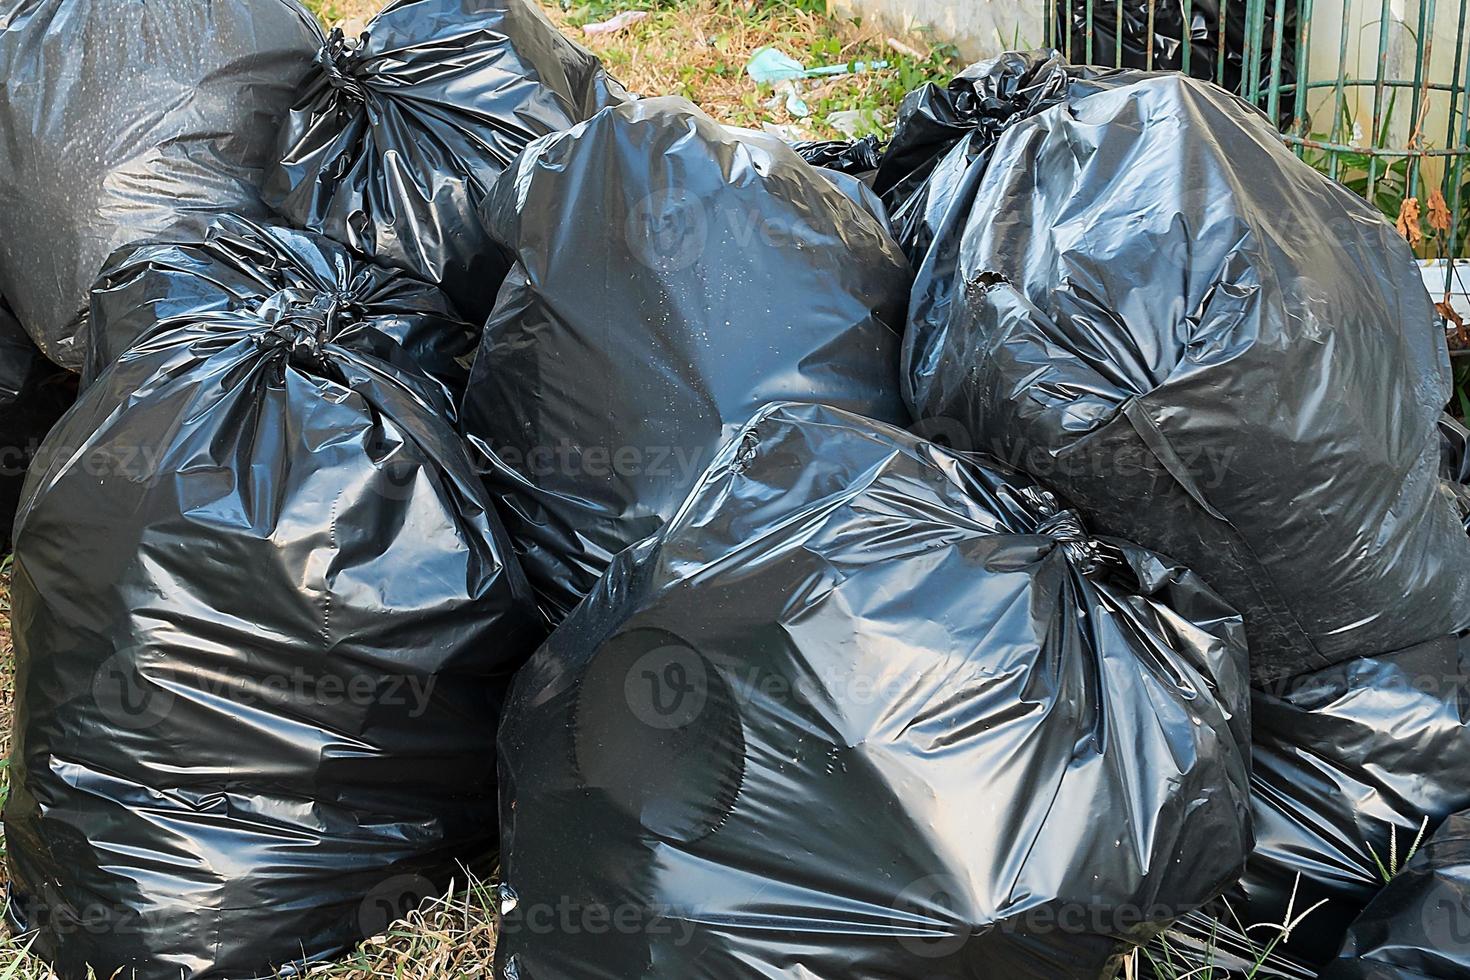 garbage bag garbage dump, Bin,Trash, Garbage, Rubbish, Plastic Bags pile photo